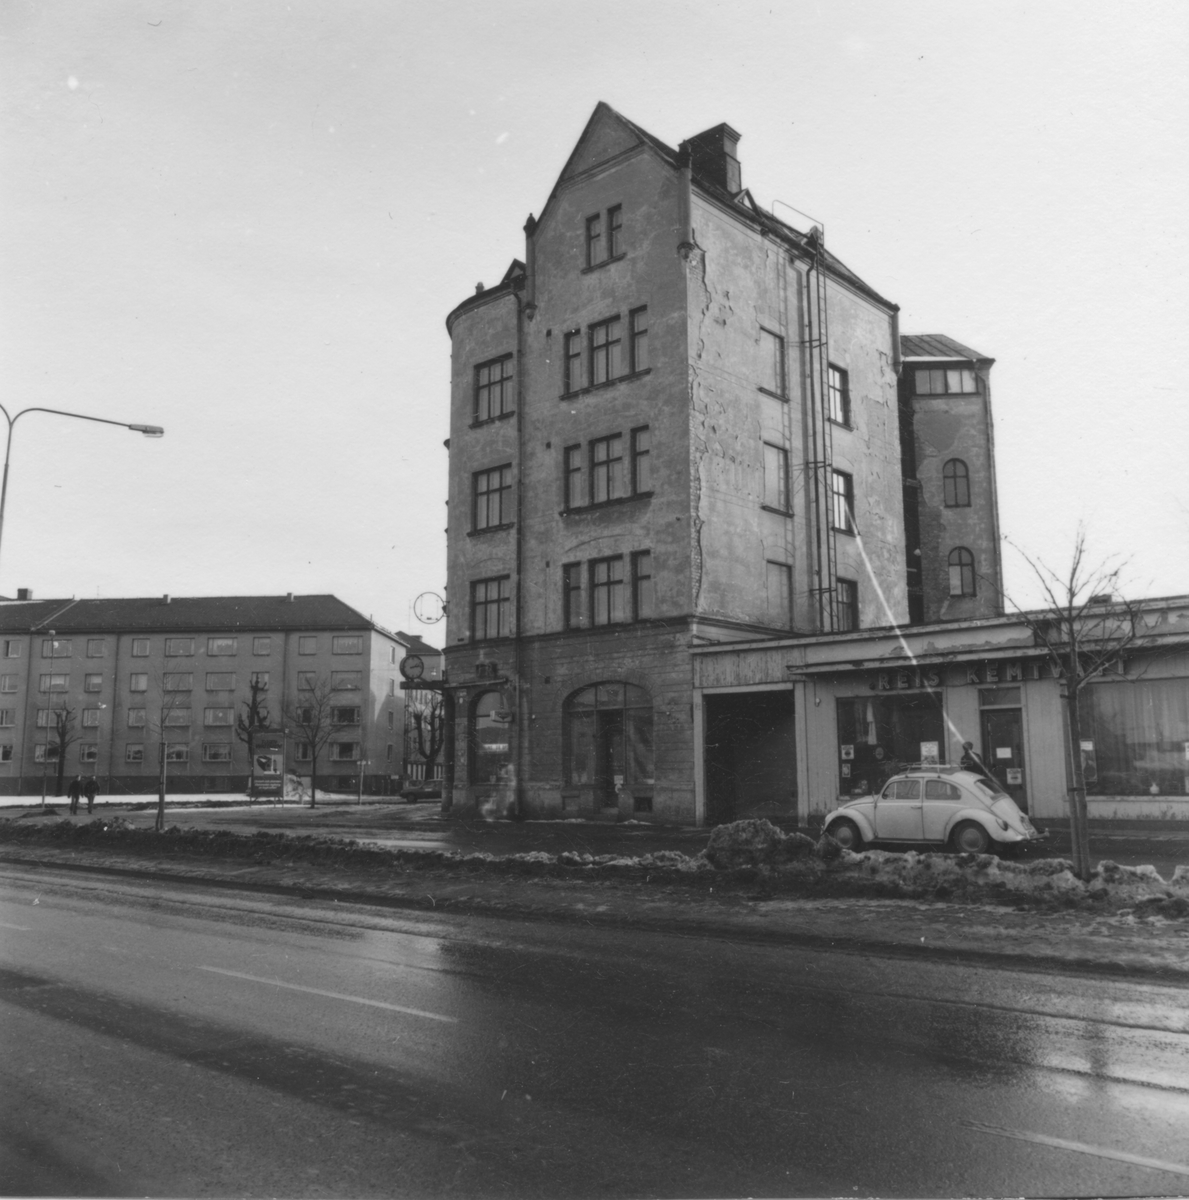 Kvarteret Gåvan
Södra Hospitalgatan 8
Brynäs